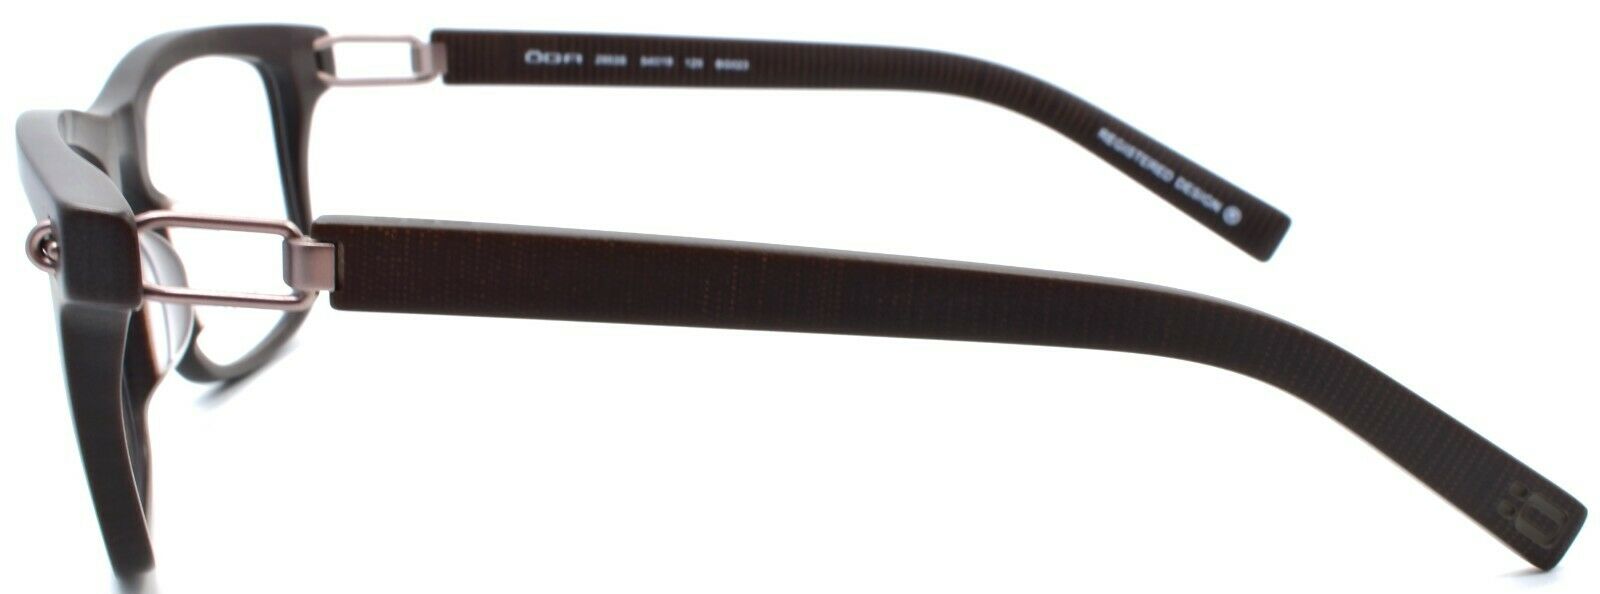 3-OGA by Morel 2953S BG023 Men's Eyeglasses Frames Asian Fit 54-18-125 Red-3604770890259-IKSpecs